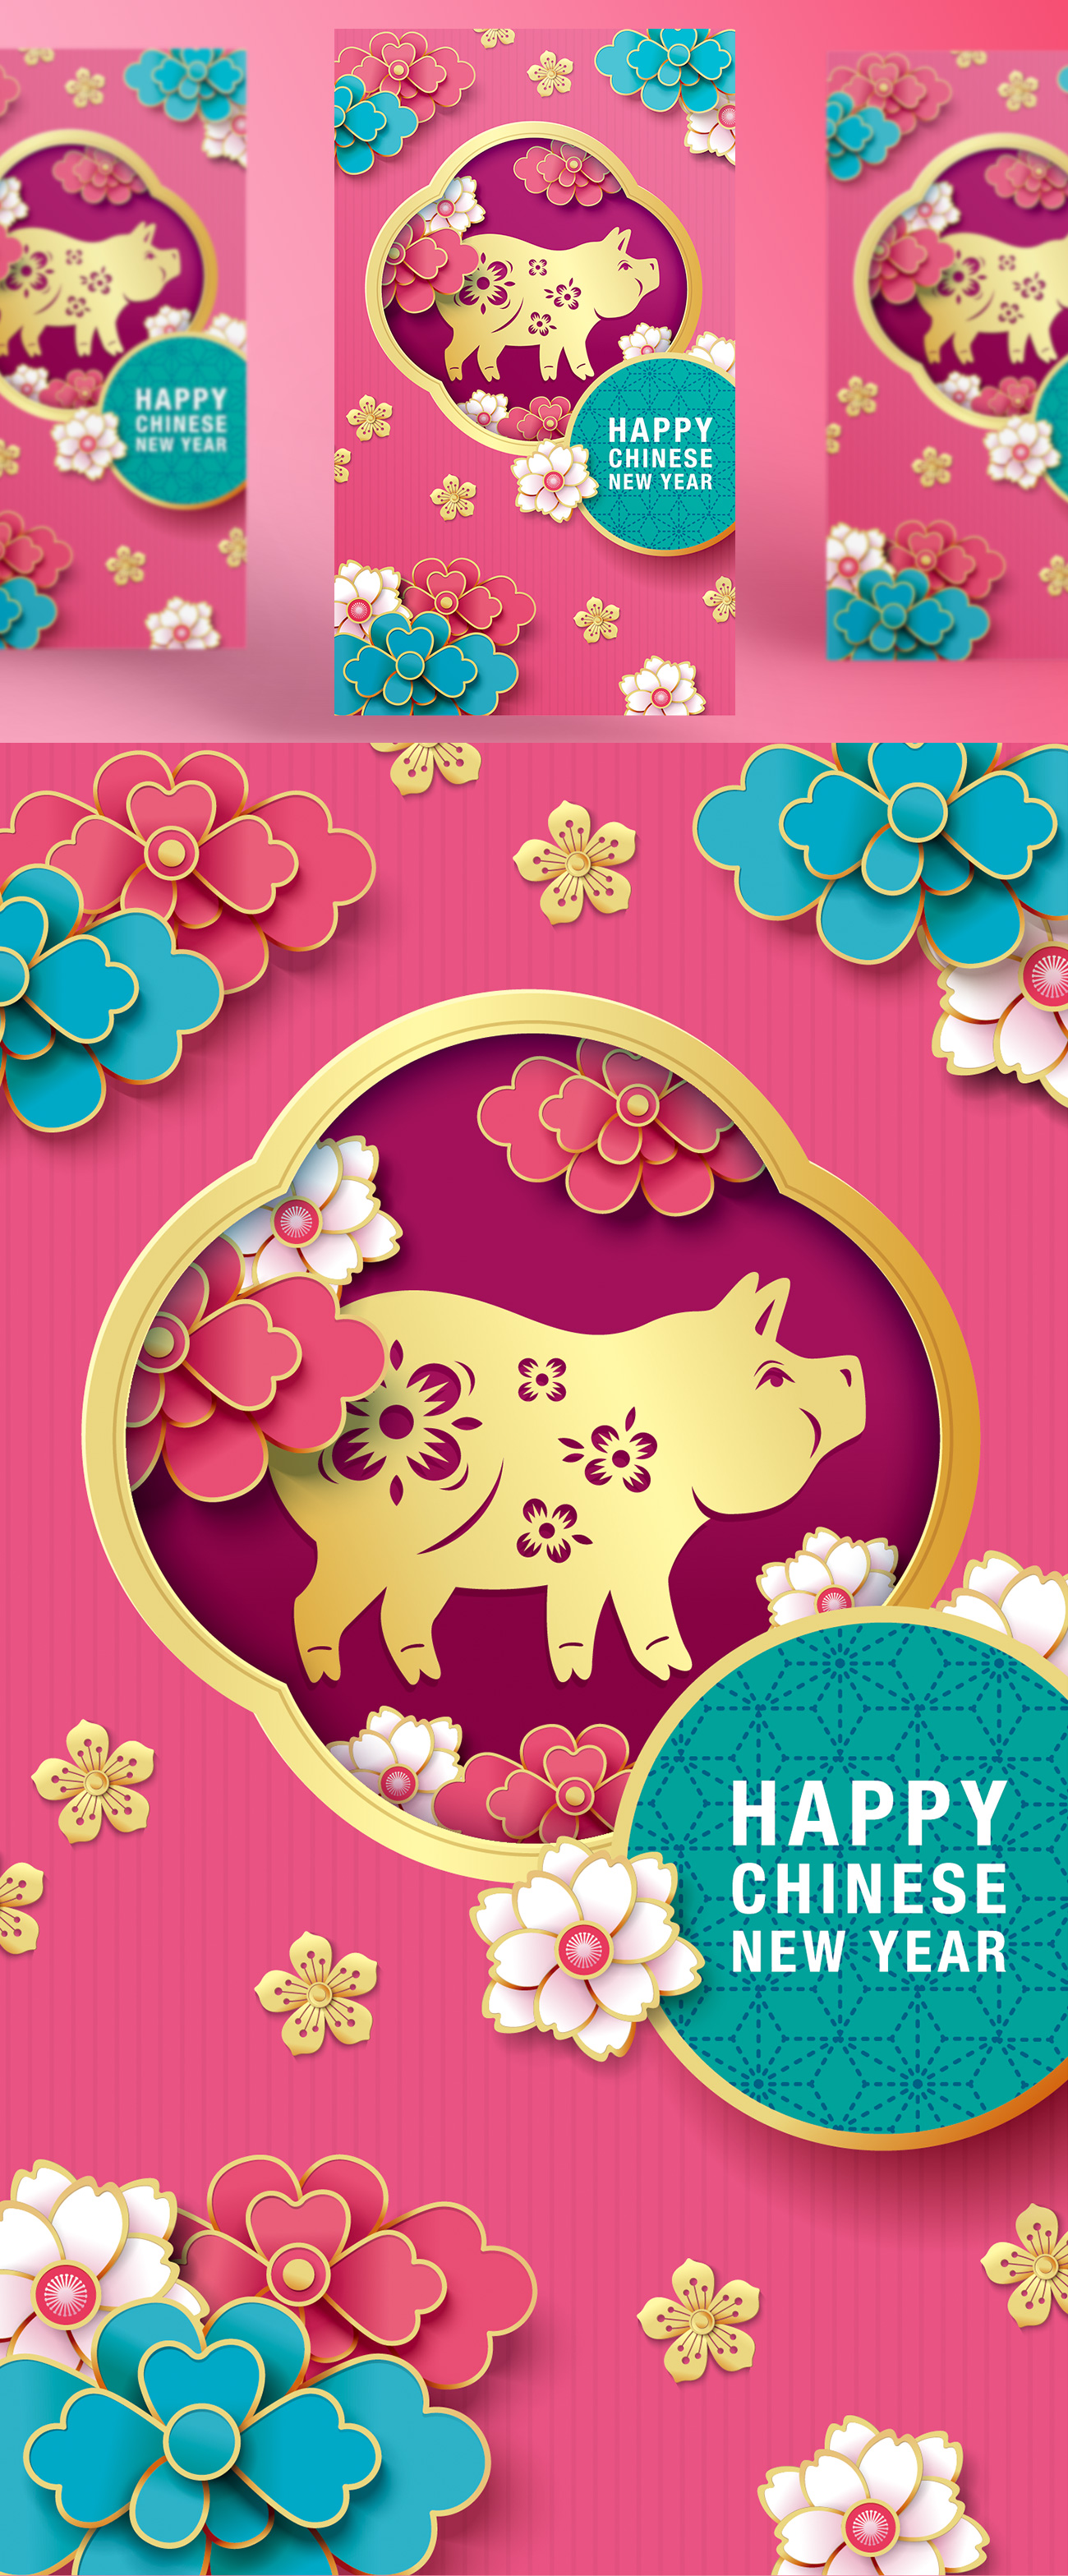 2019猪年中国传统新年十二生肖纸艺贺卡矢量素材 Chine